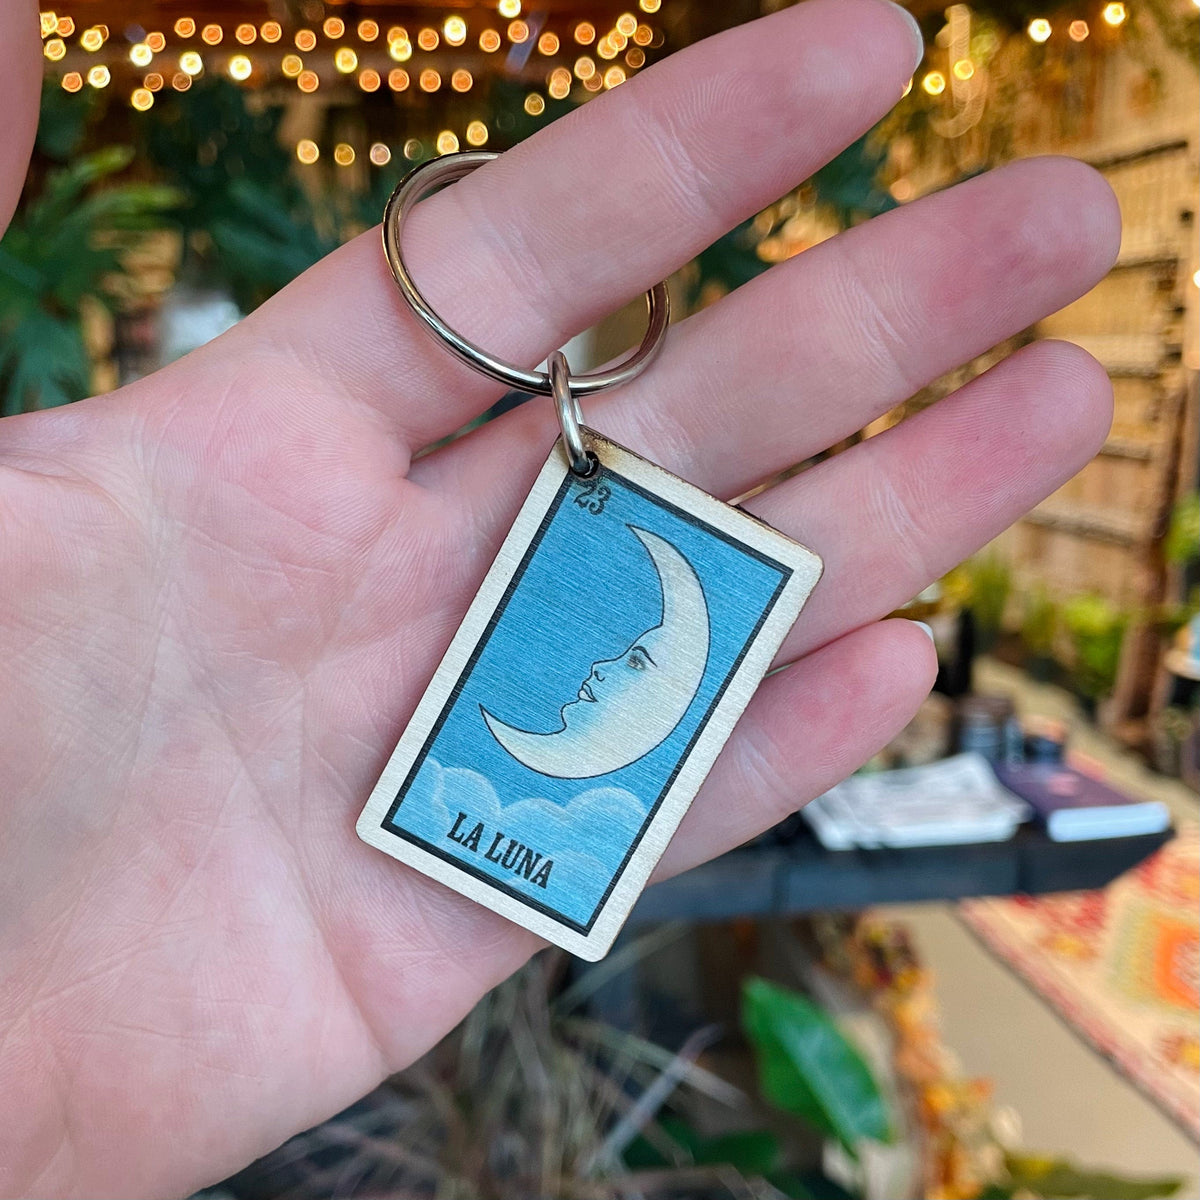 Most Amazing La Luna Keychain